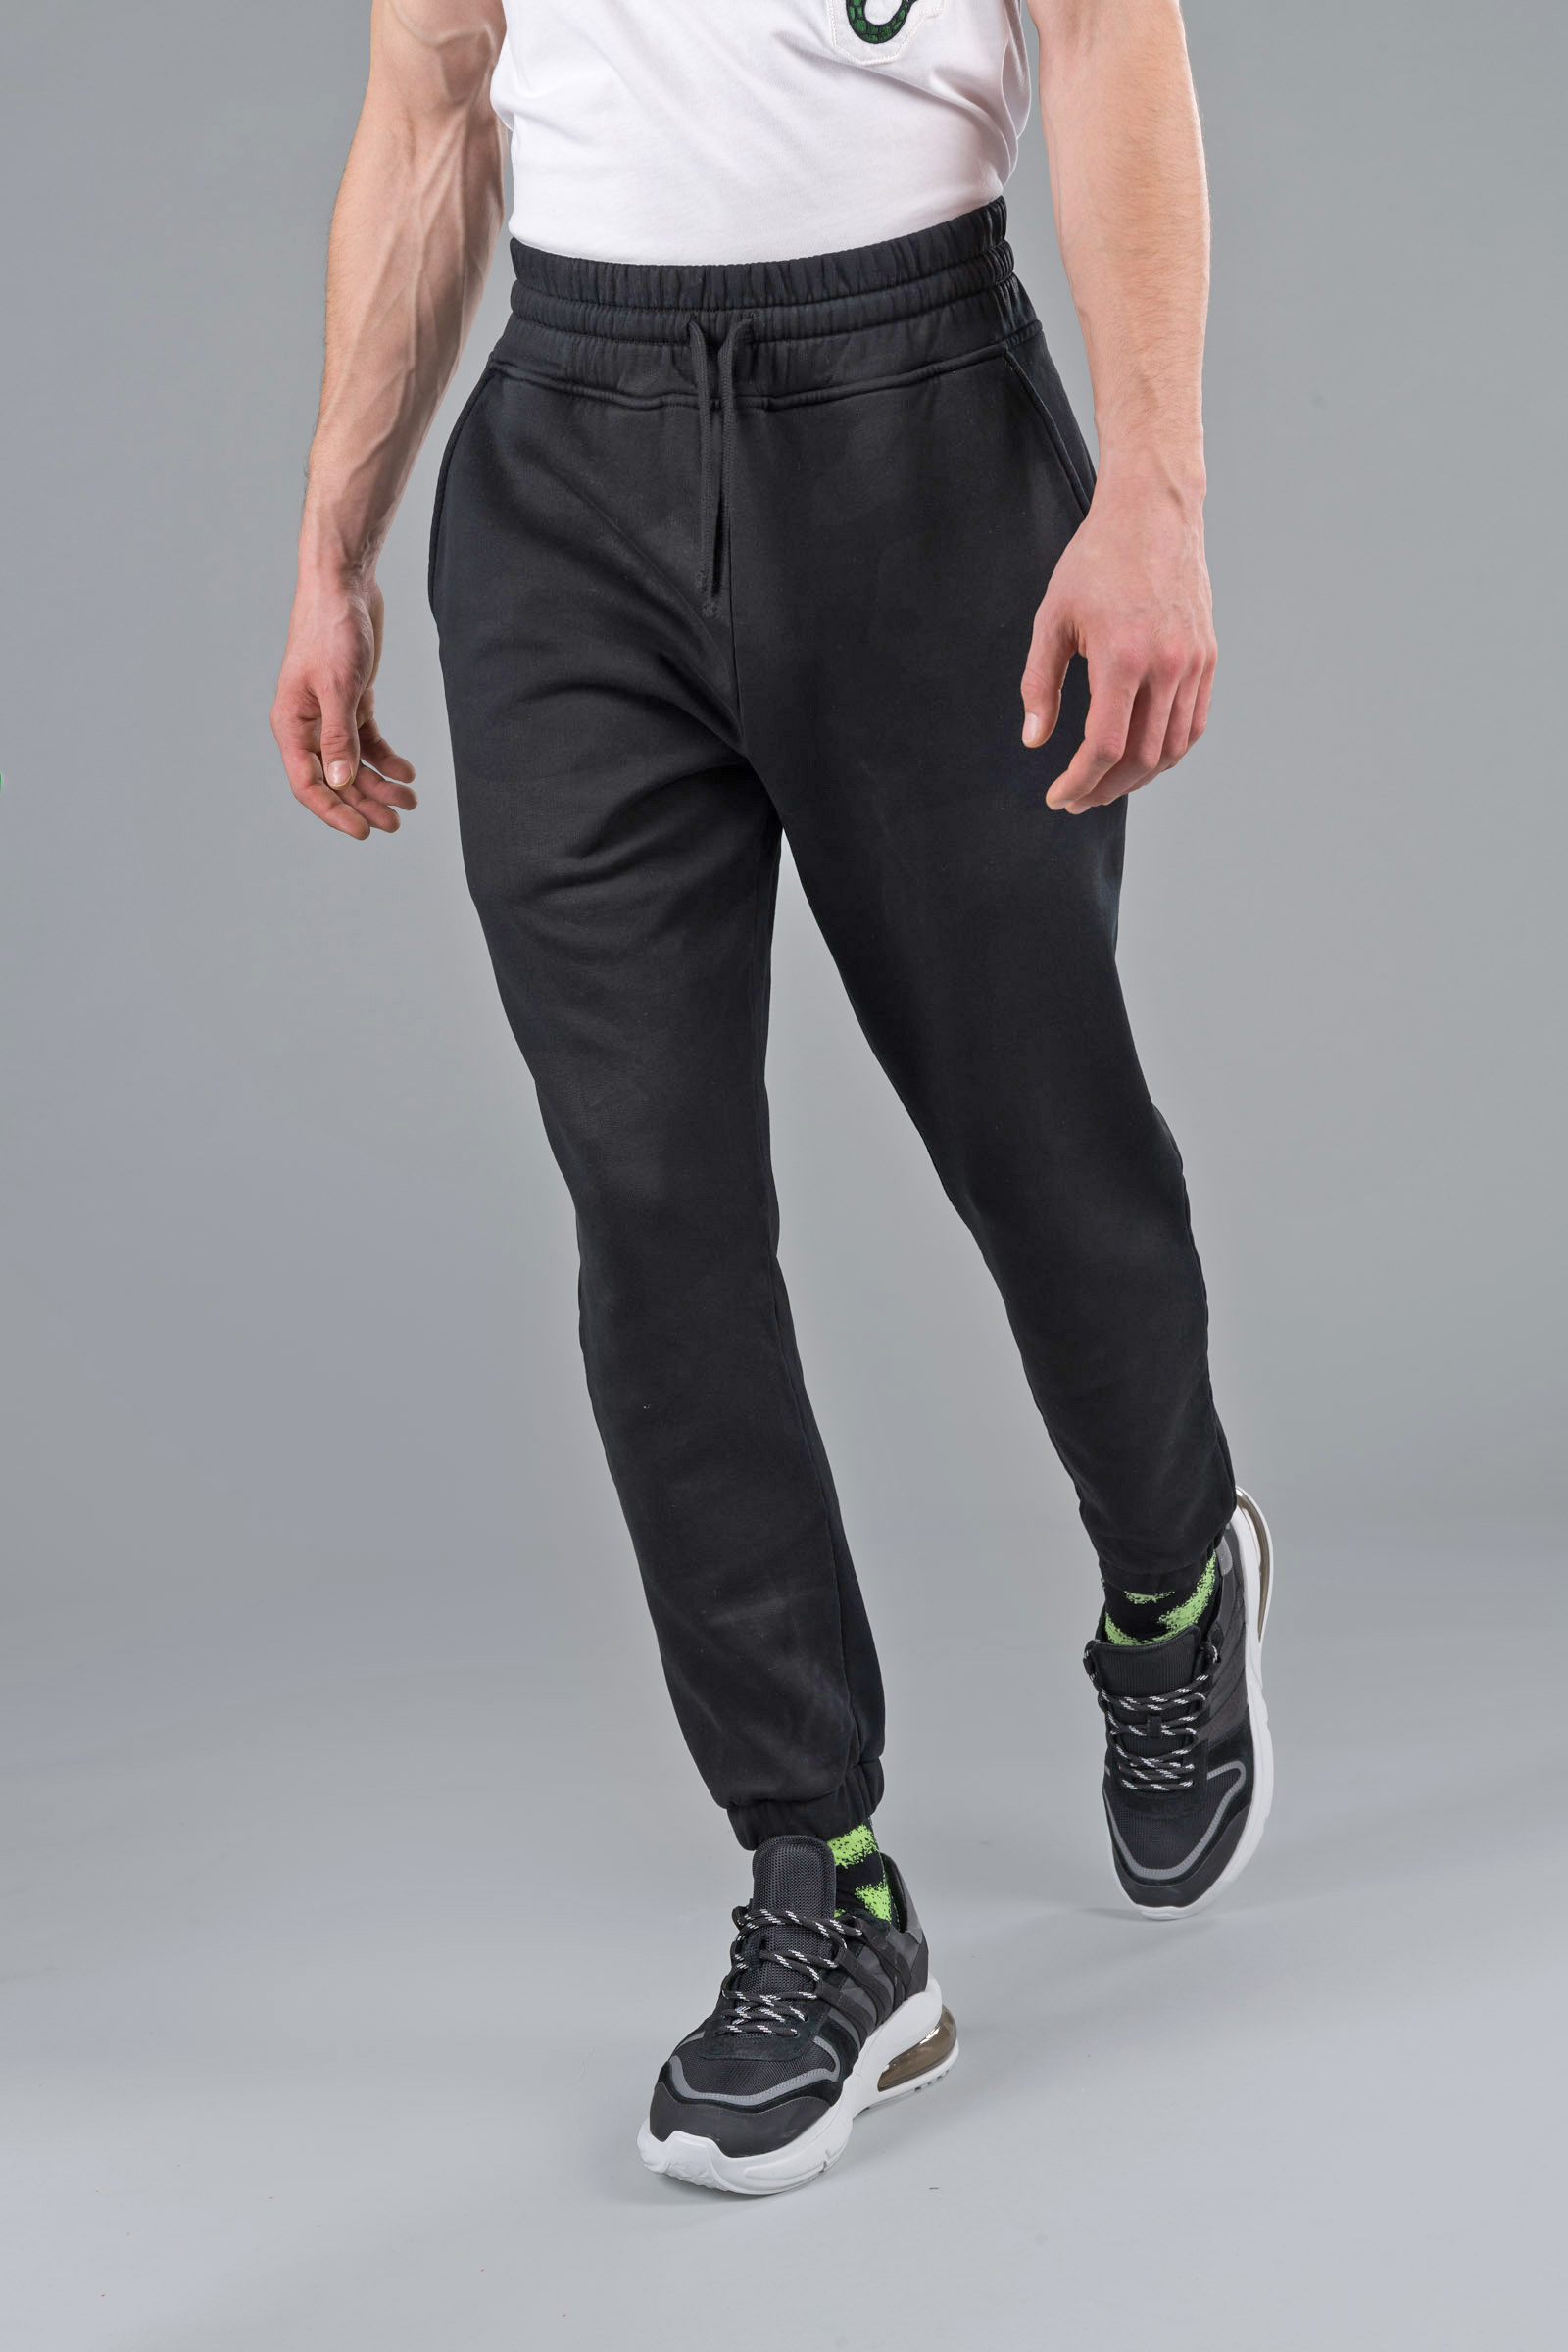 CAMO PANTS - BLACK CAMOUFLAGE - Abbigliamento sportivo | Hydrogen